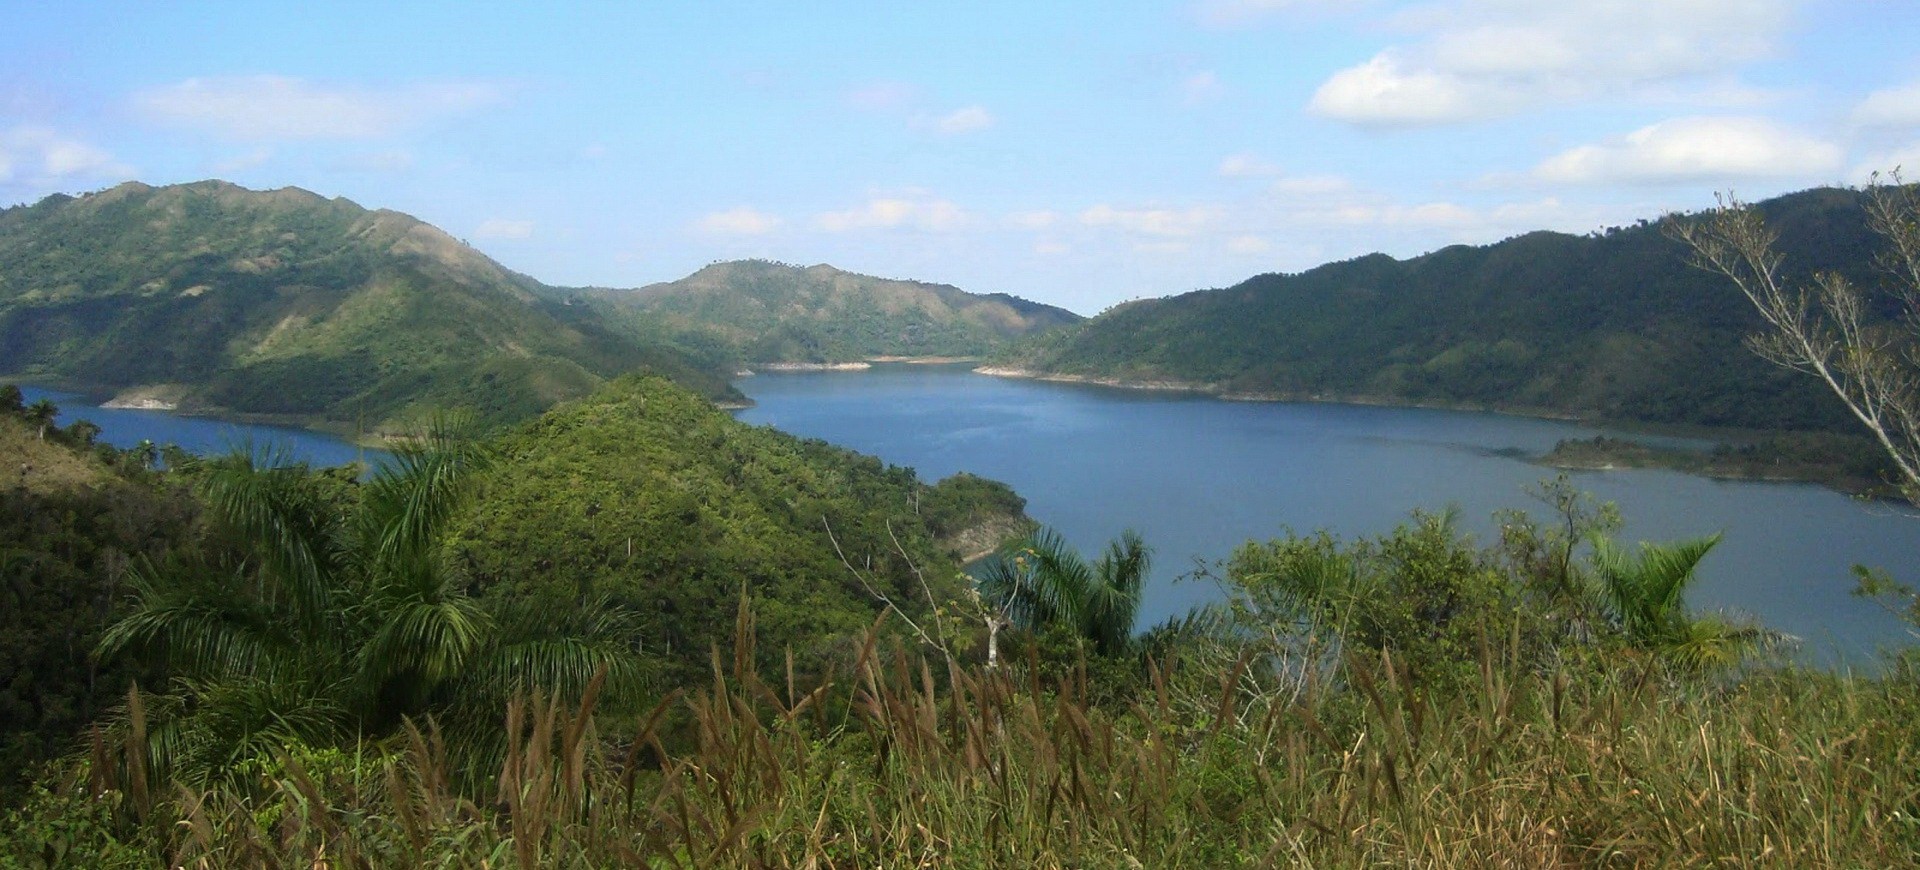 Cuba Hanabanilla lac